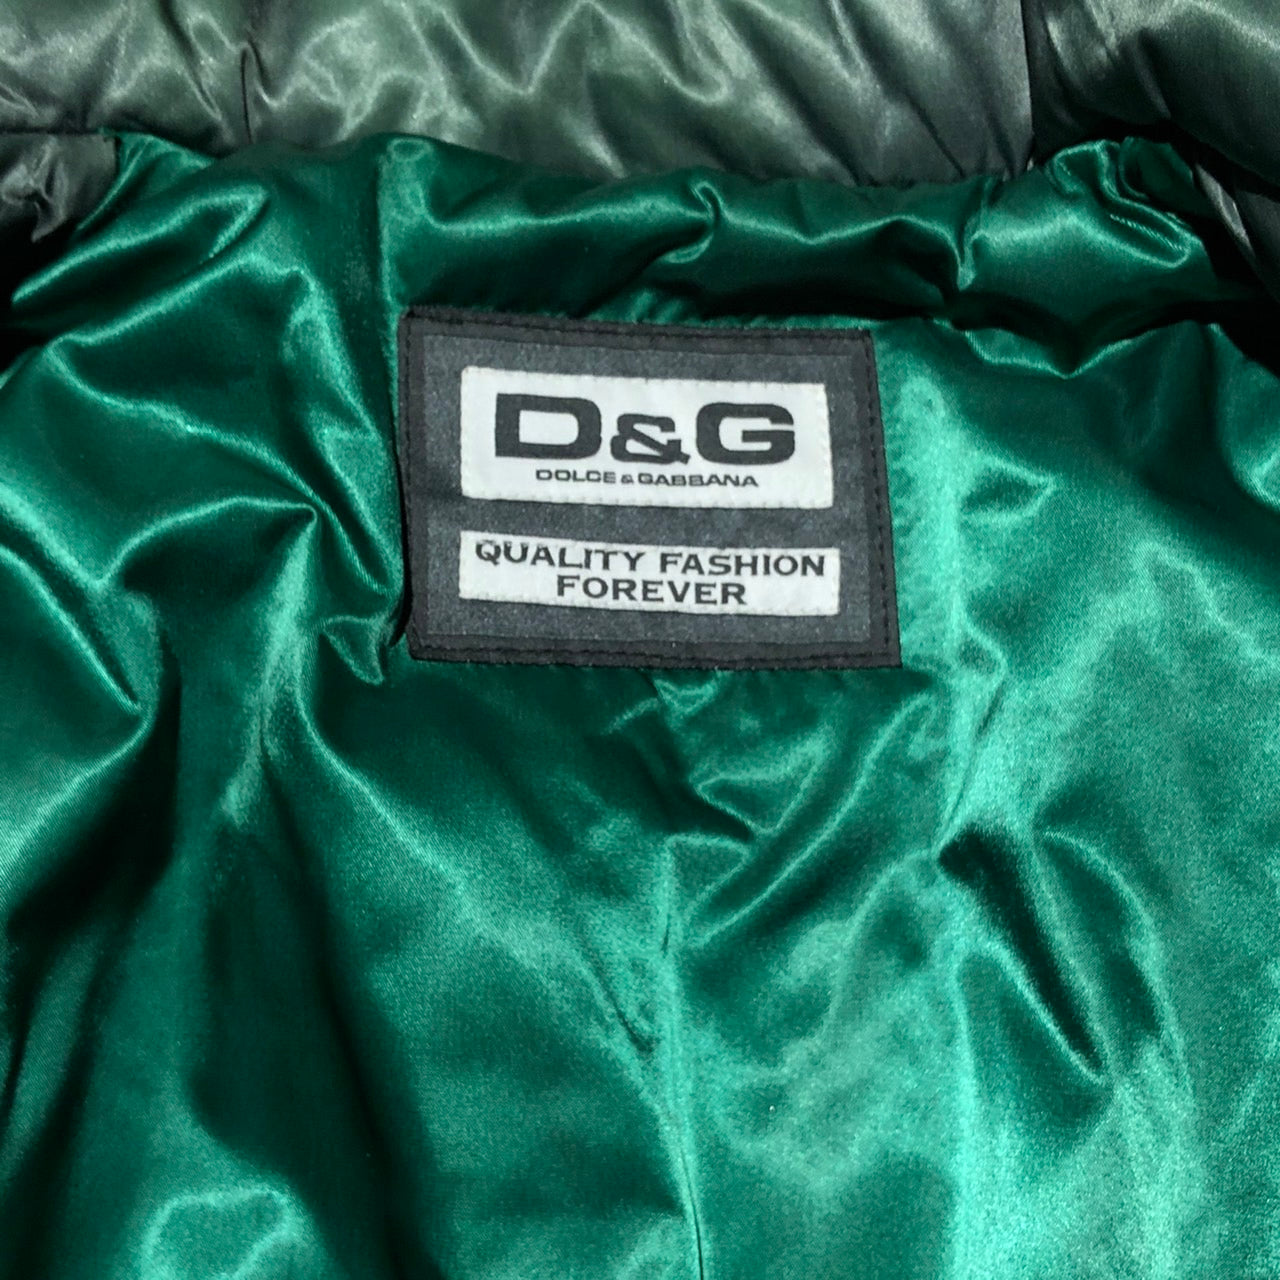 D&G DOLCE&GABBANA(ディーアンドジードルチェ&ガッバーナ) 90'sナイロンレザー切替ジャケット 46(M程度) カーキ